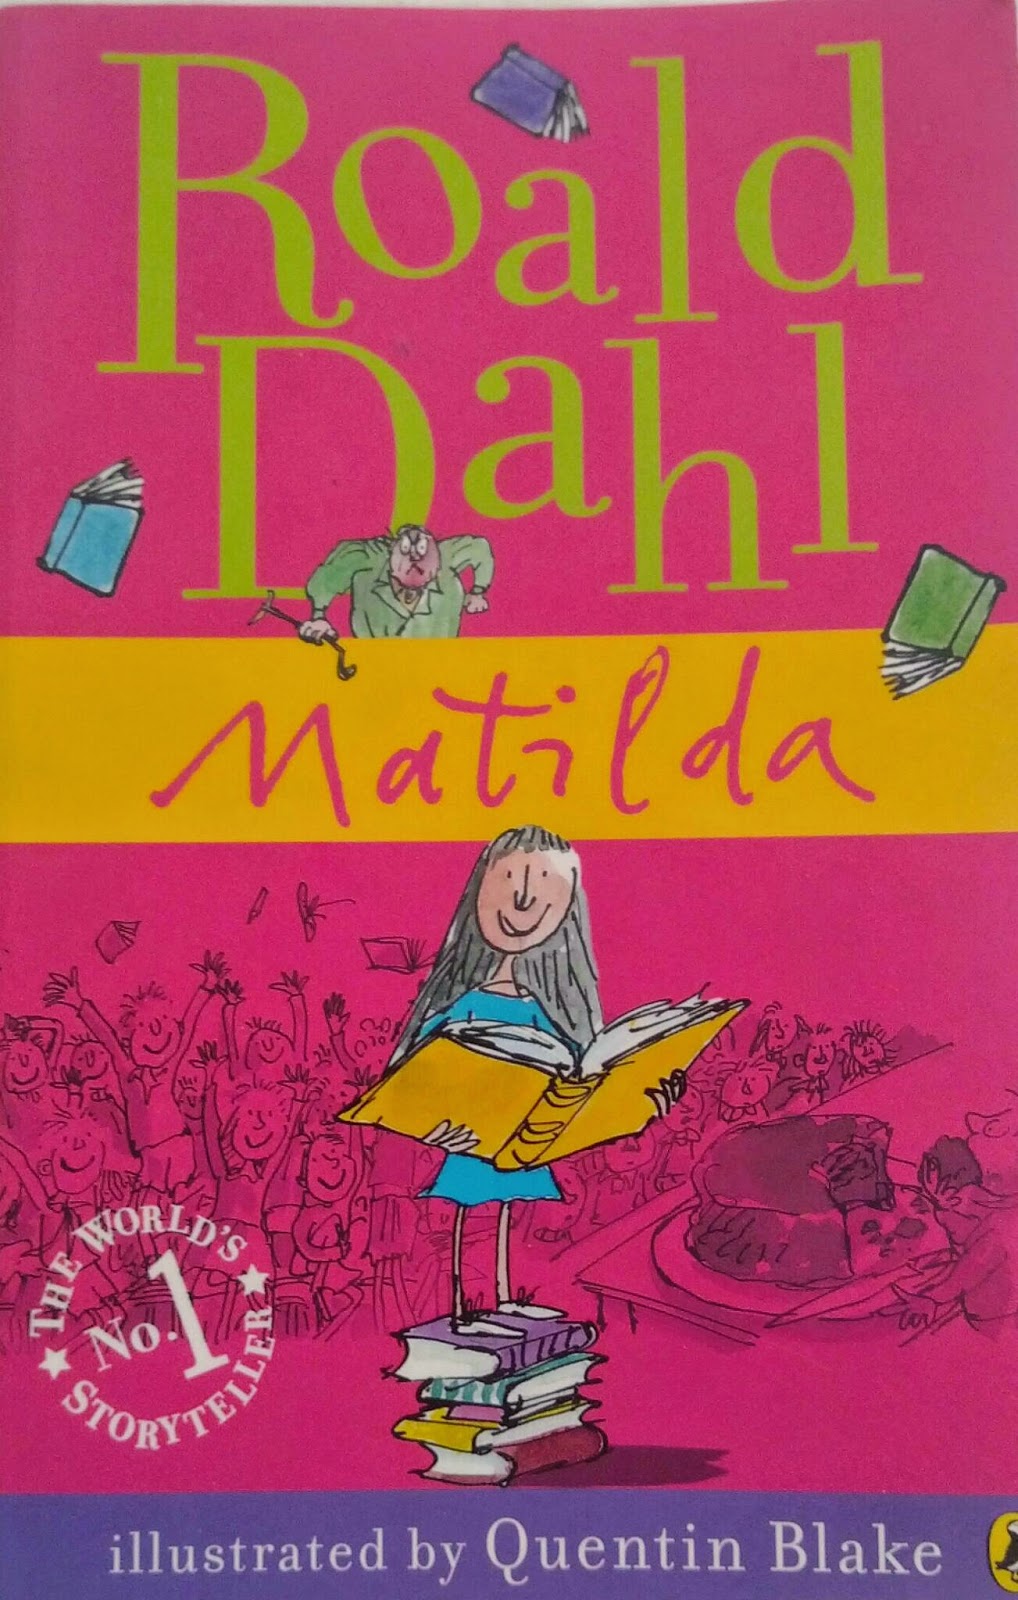 Matilda dahl